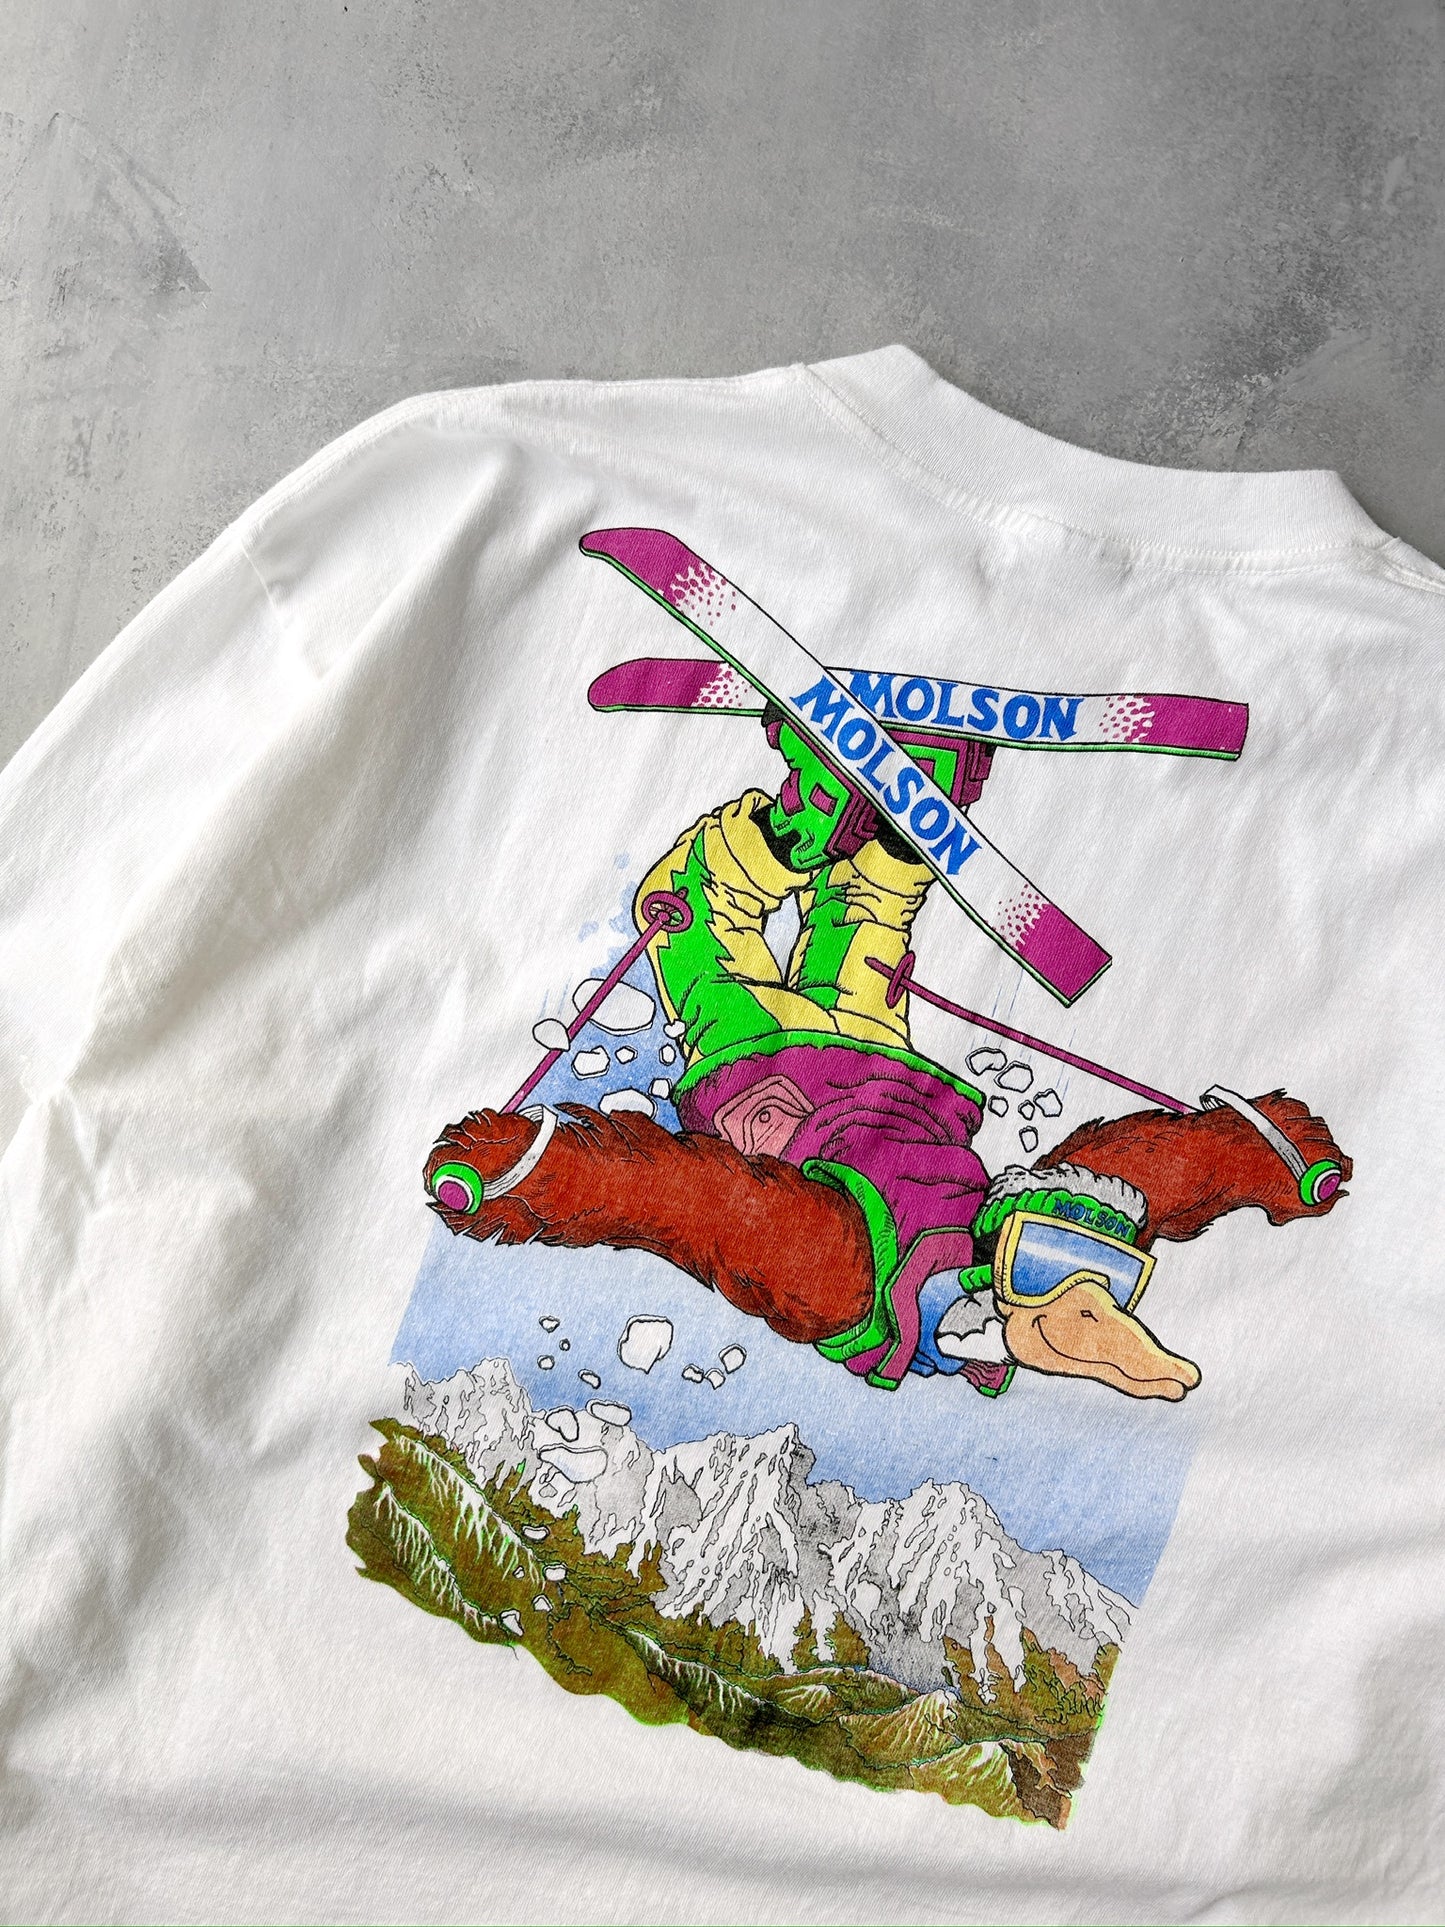 Molson Ski Challenge T-Shirt 90's - XL